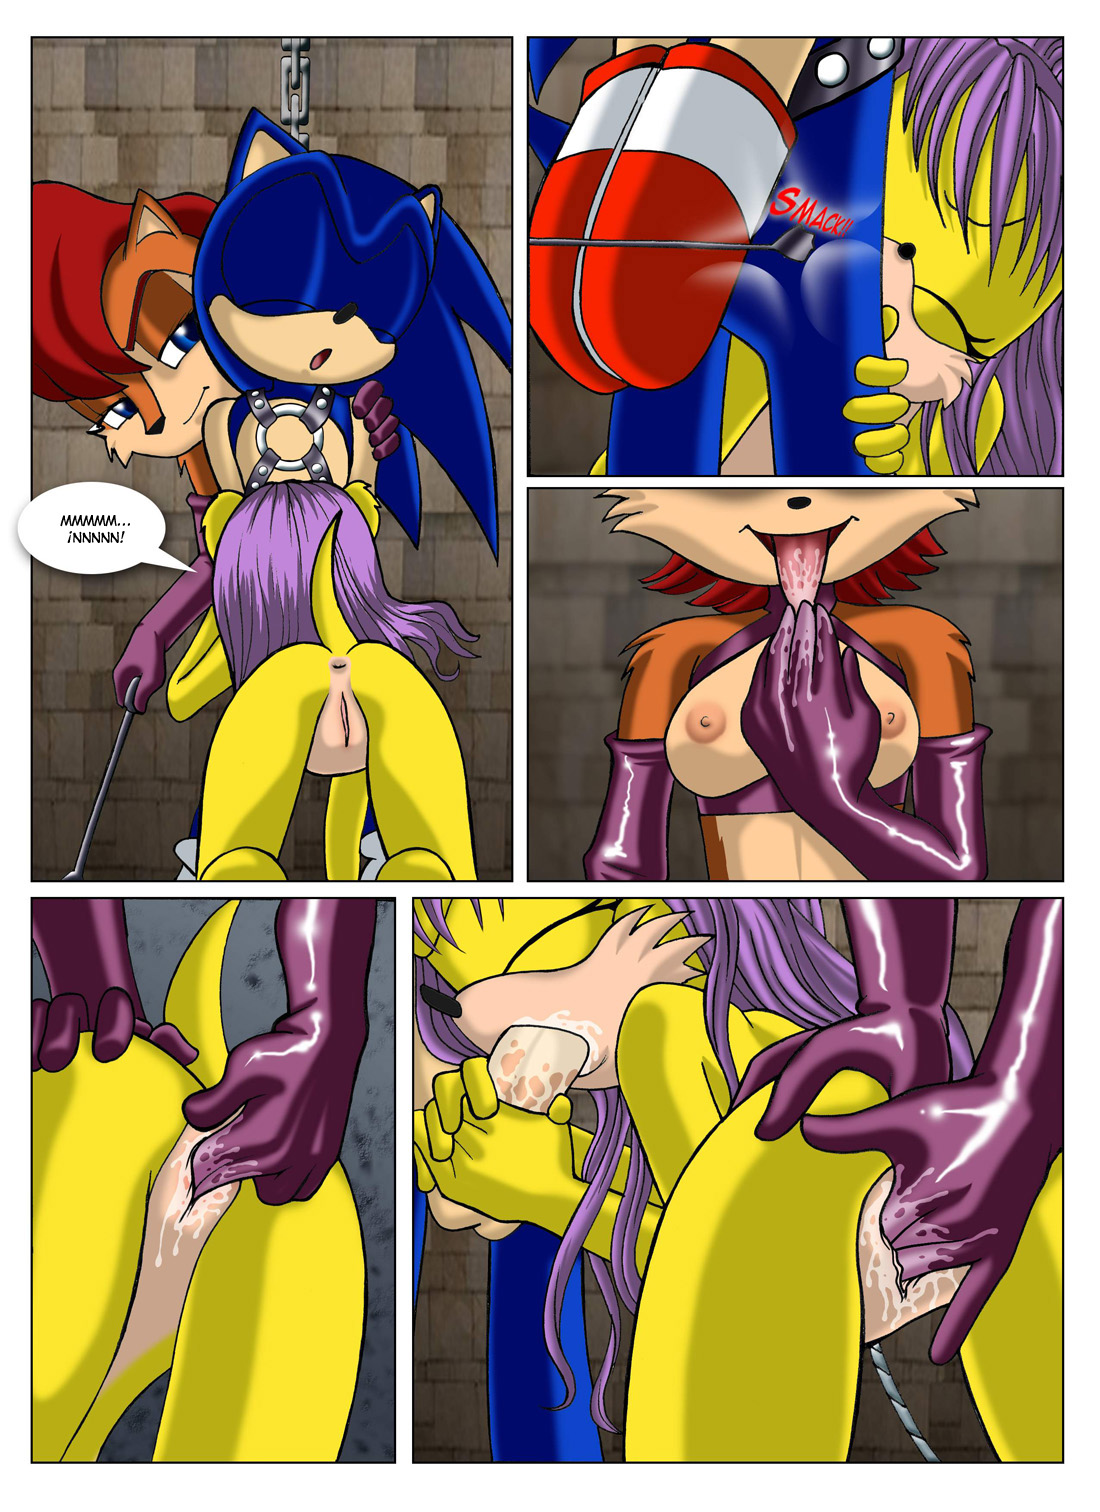 1100px x 1512px - Sonic XXX Project #2 - Page 5 - Comic Porn XXX